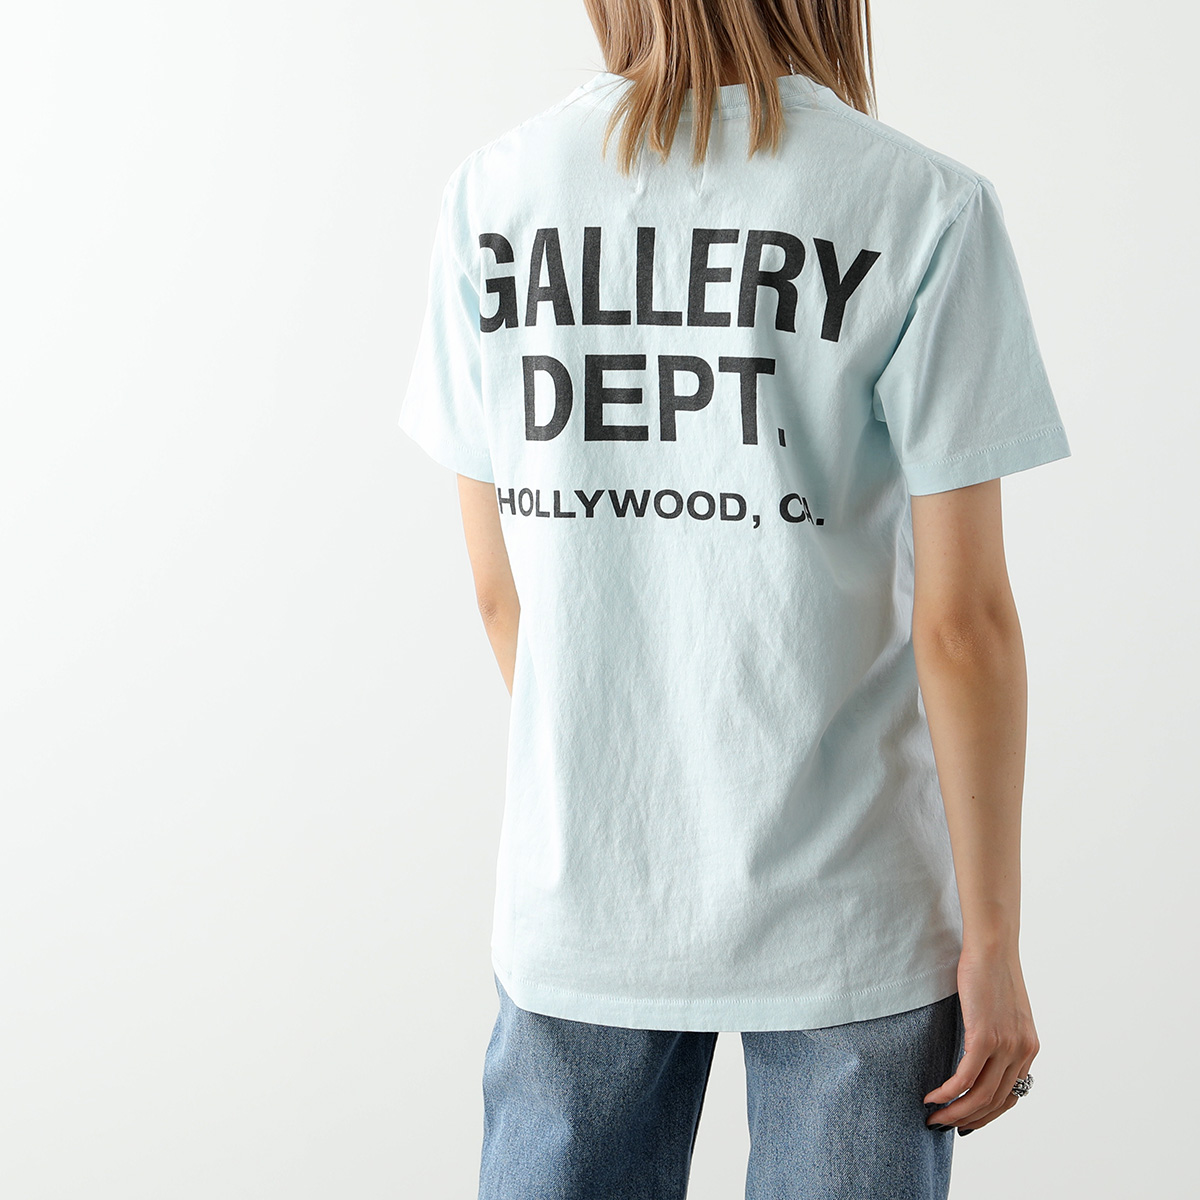 GALLERY DEPT ギャラリーデプト 半袖 Tシャツ VINTAGE SOUVENIR TEE レディース ロゴT コットン カットソー  カラー5色【cp_ten】 | インポートセレクト musee